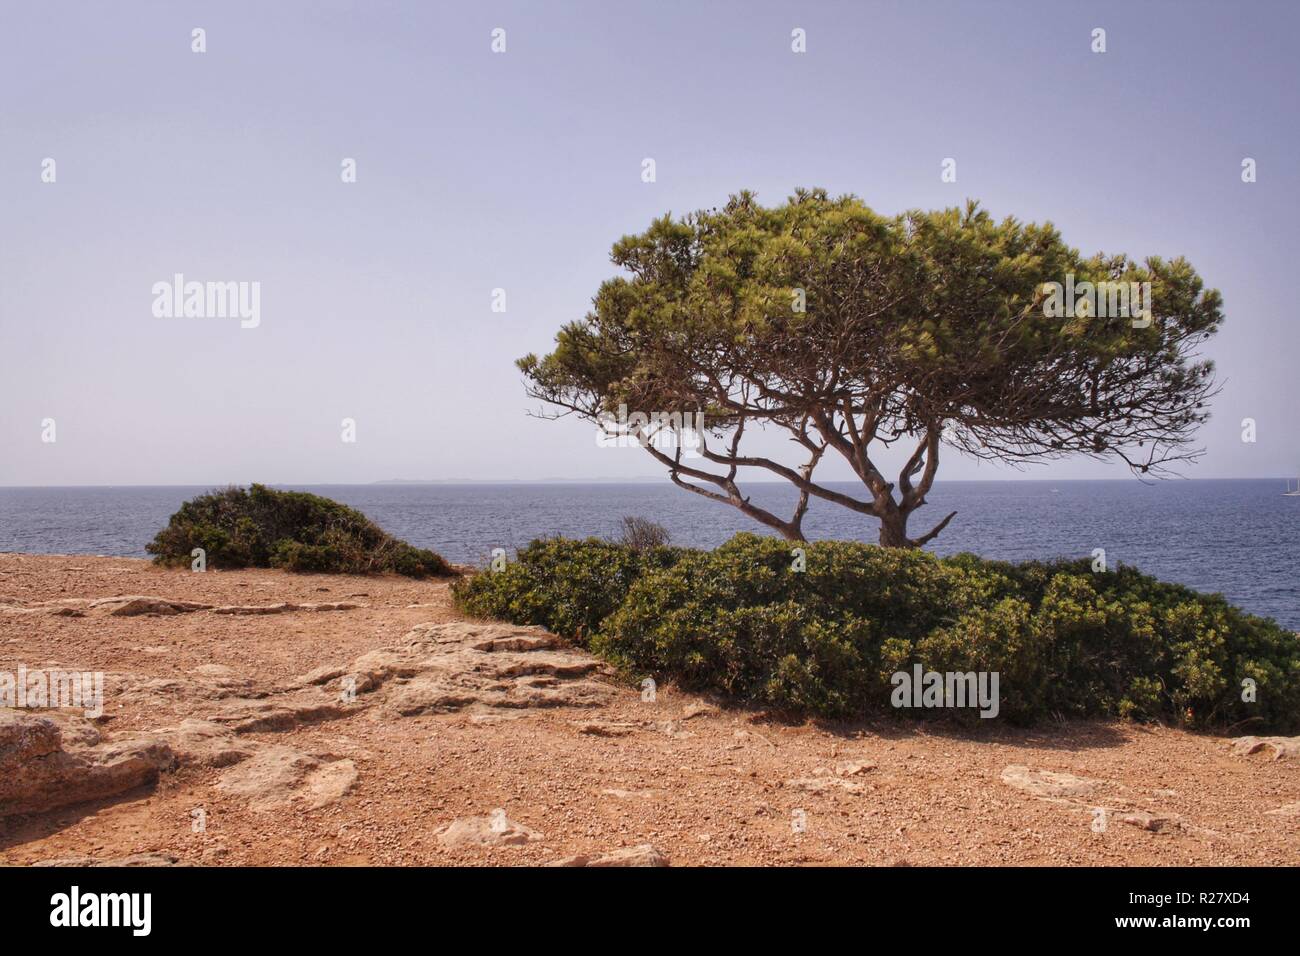 Der berühmte Aussichtspunkt en Cala Pi mit der alten Pinie direkt an der Steilküste. Foto de stock